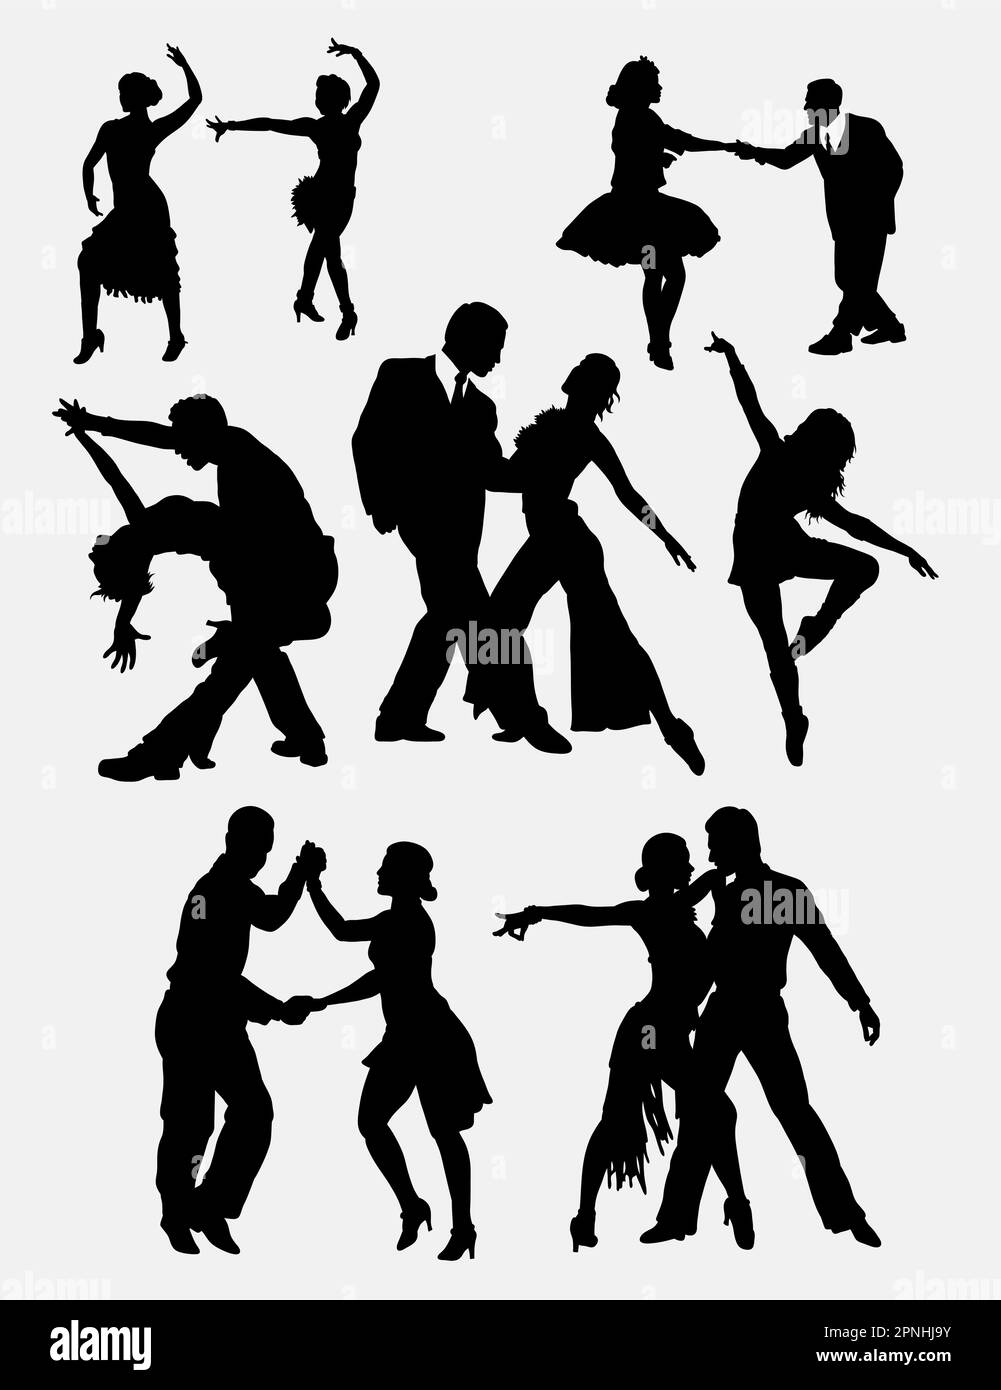 Tango salsa 2 maschile e femminile danzatrice silhouette. Buon uso per simbolo, icona web, logo, mascotte, adesivo, o qualsiasi progetto che desideri. Facile da usare. Illustrazione Vettoriale